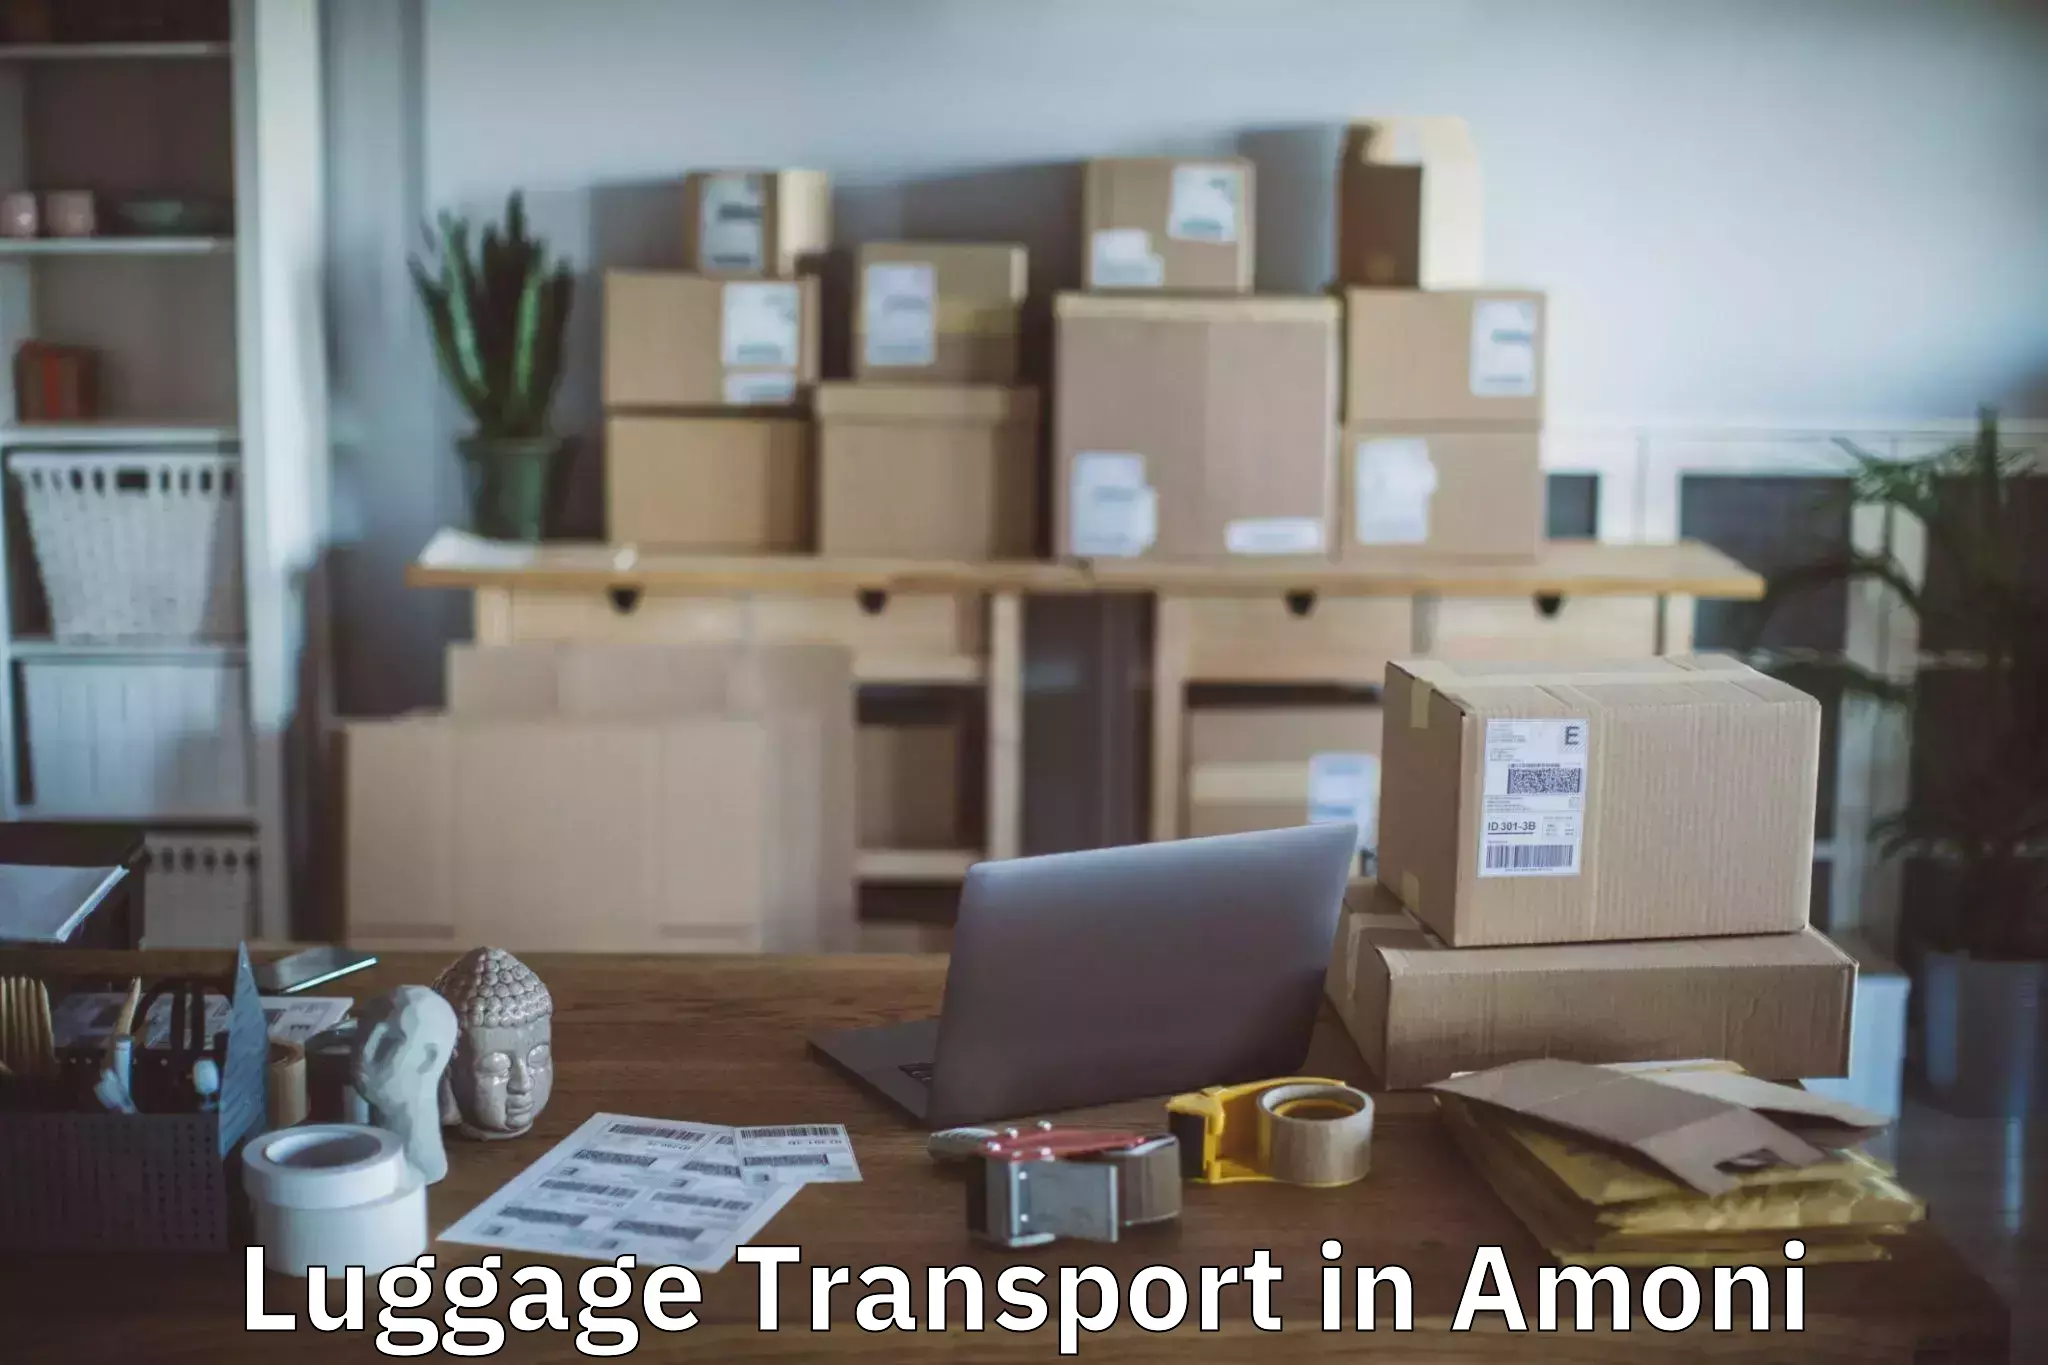 Luggage transfer service in Amoni